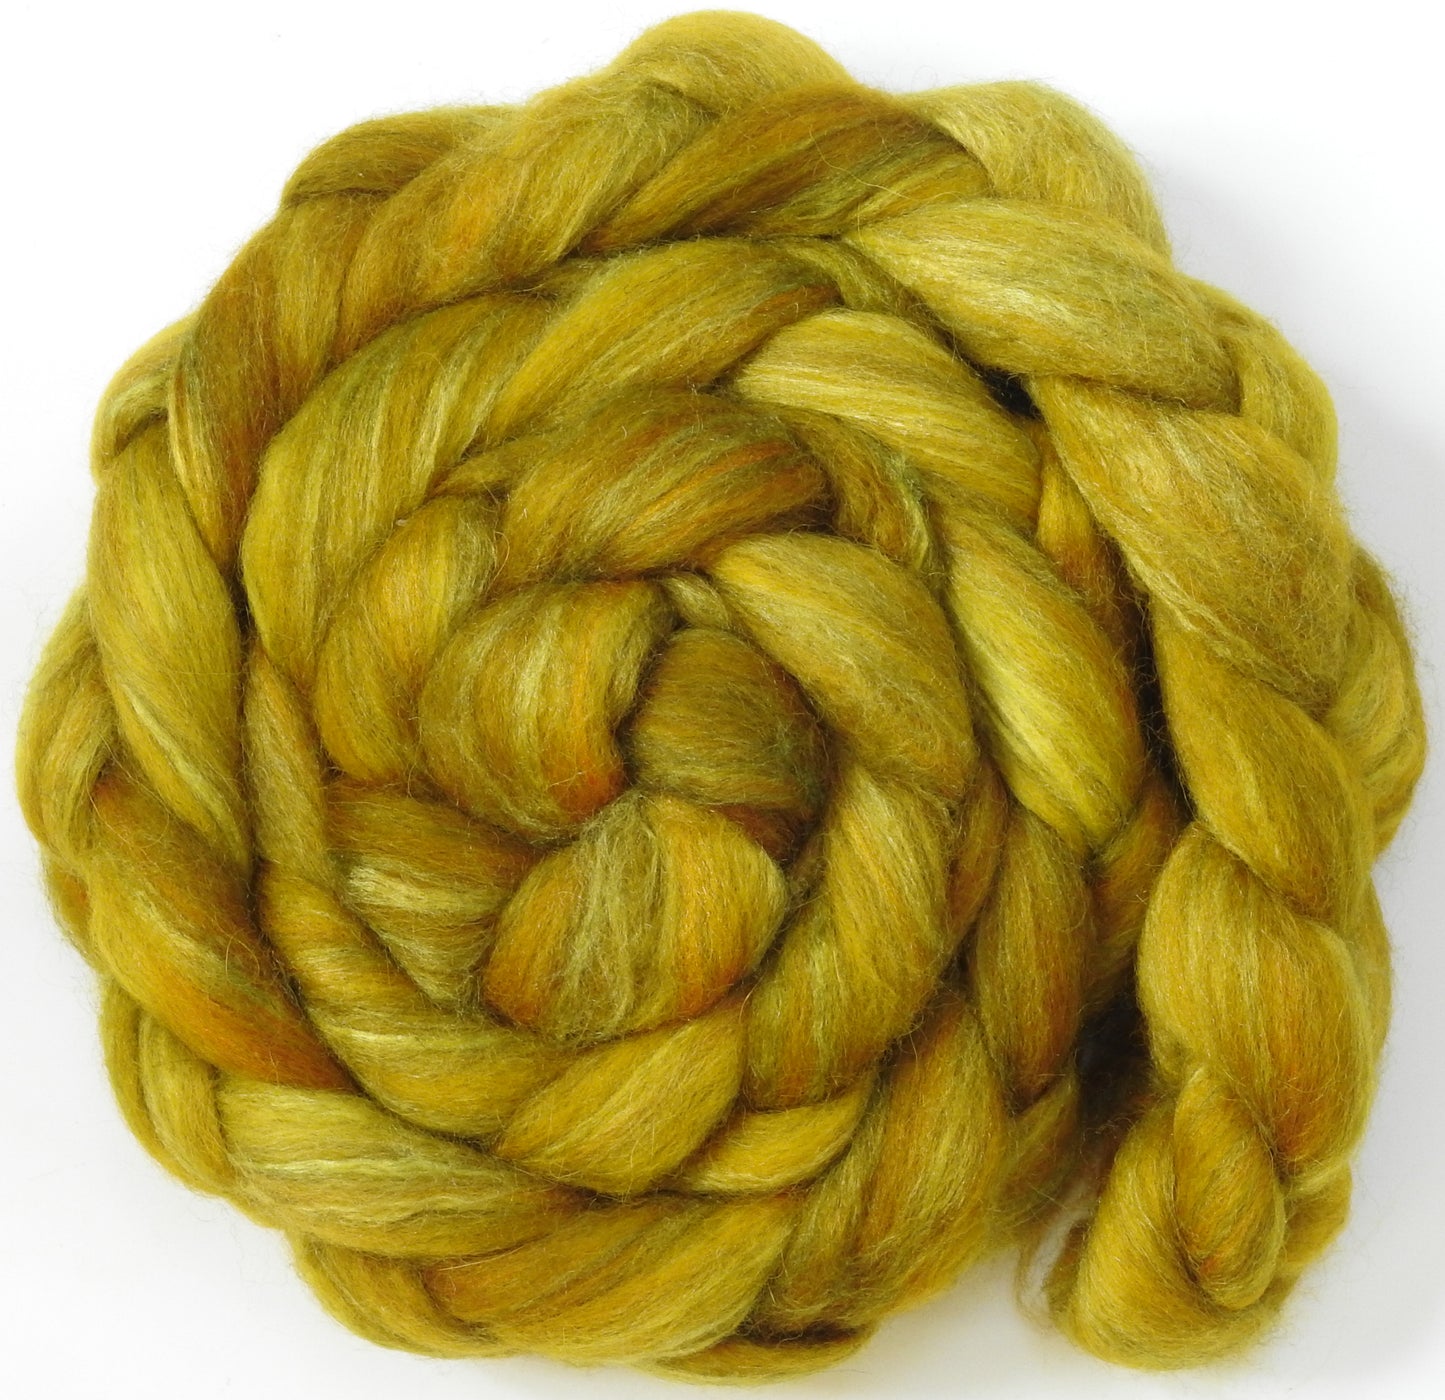 Sunflower -(5.6 oz.) Batt in a Braid #1- Falkland/ Grey Baby Alpaca/ Tussah Silk/ Firestar (40/25/25/10)